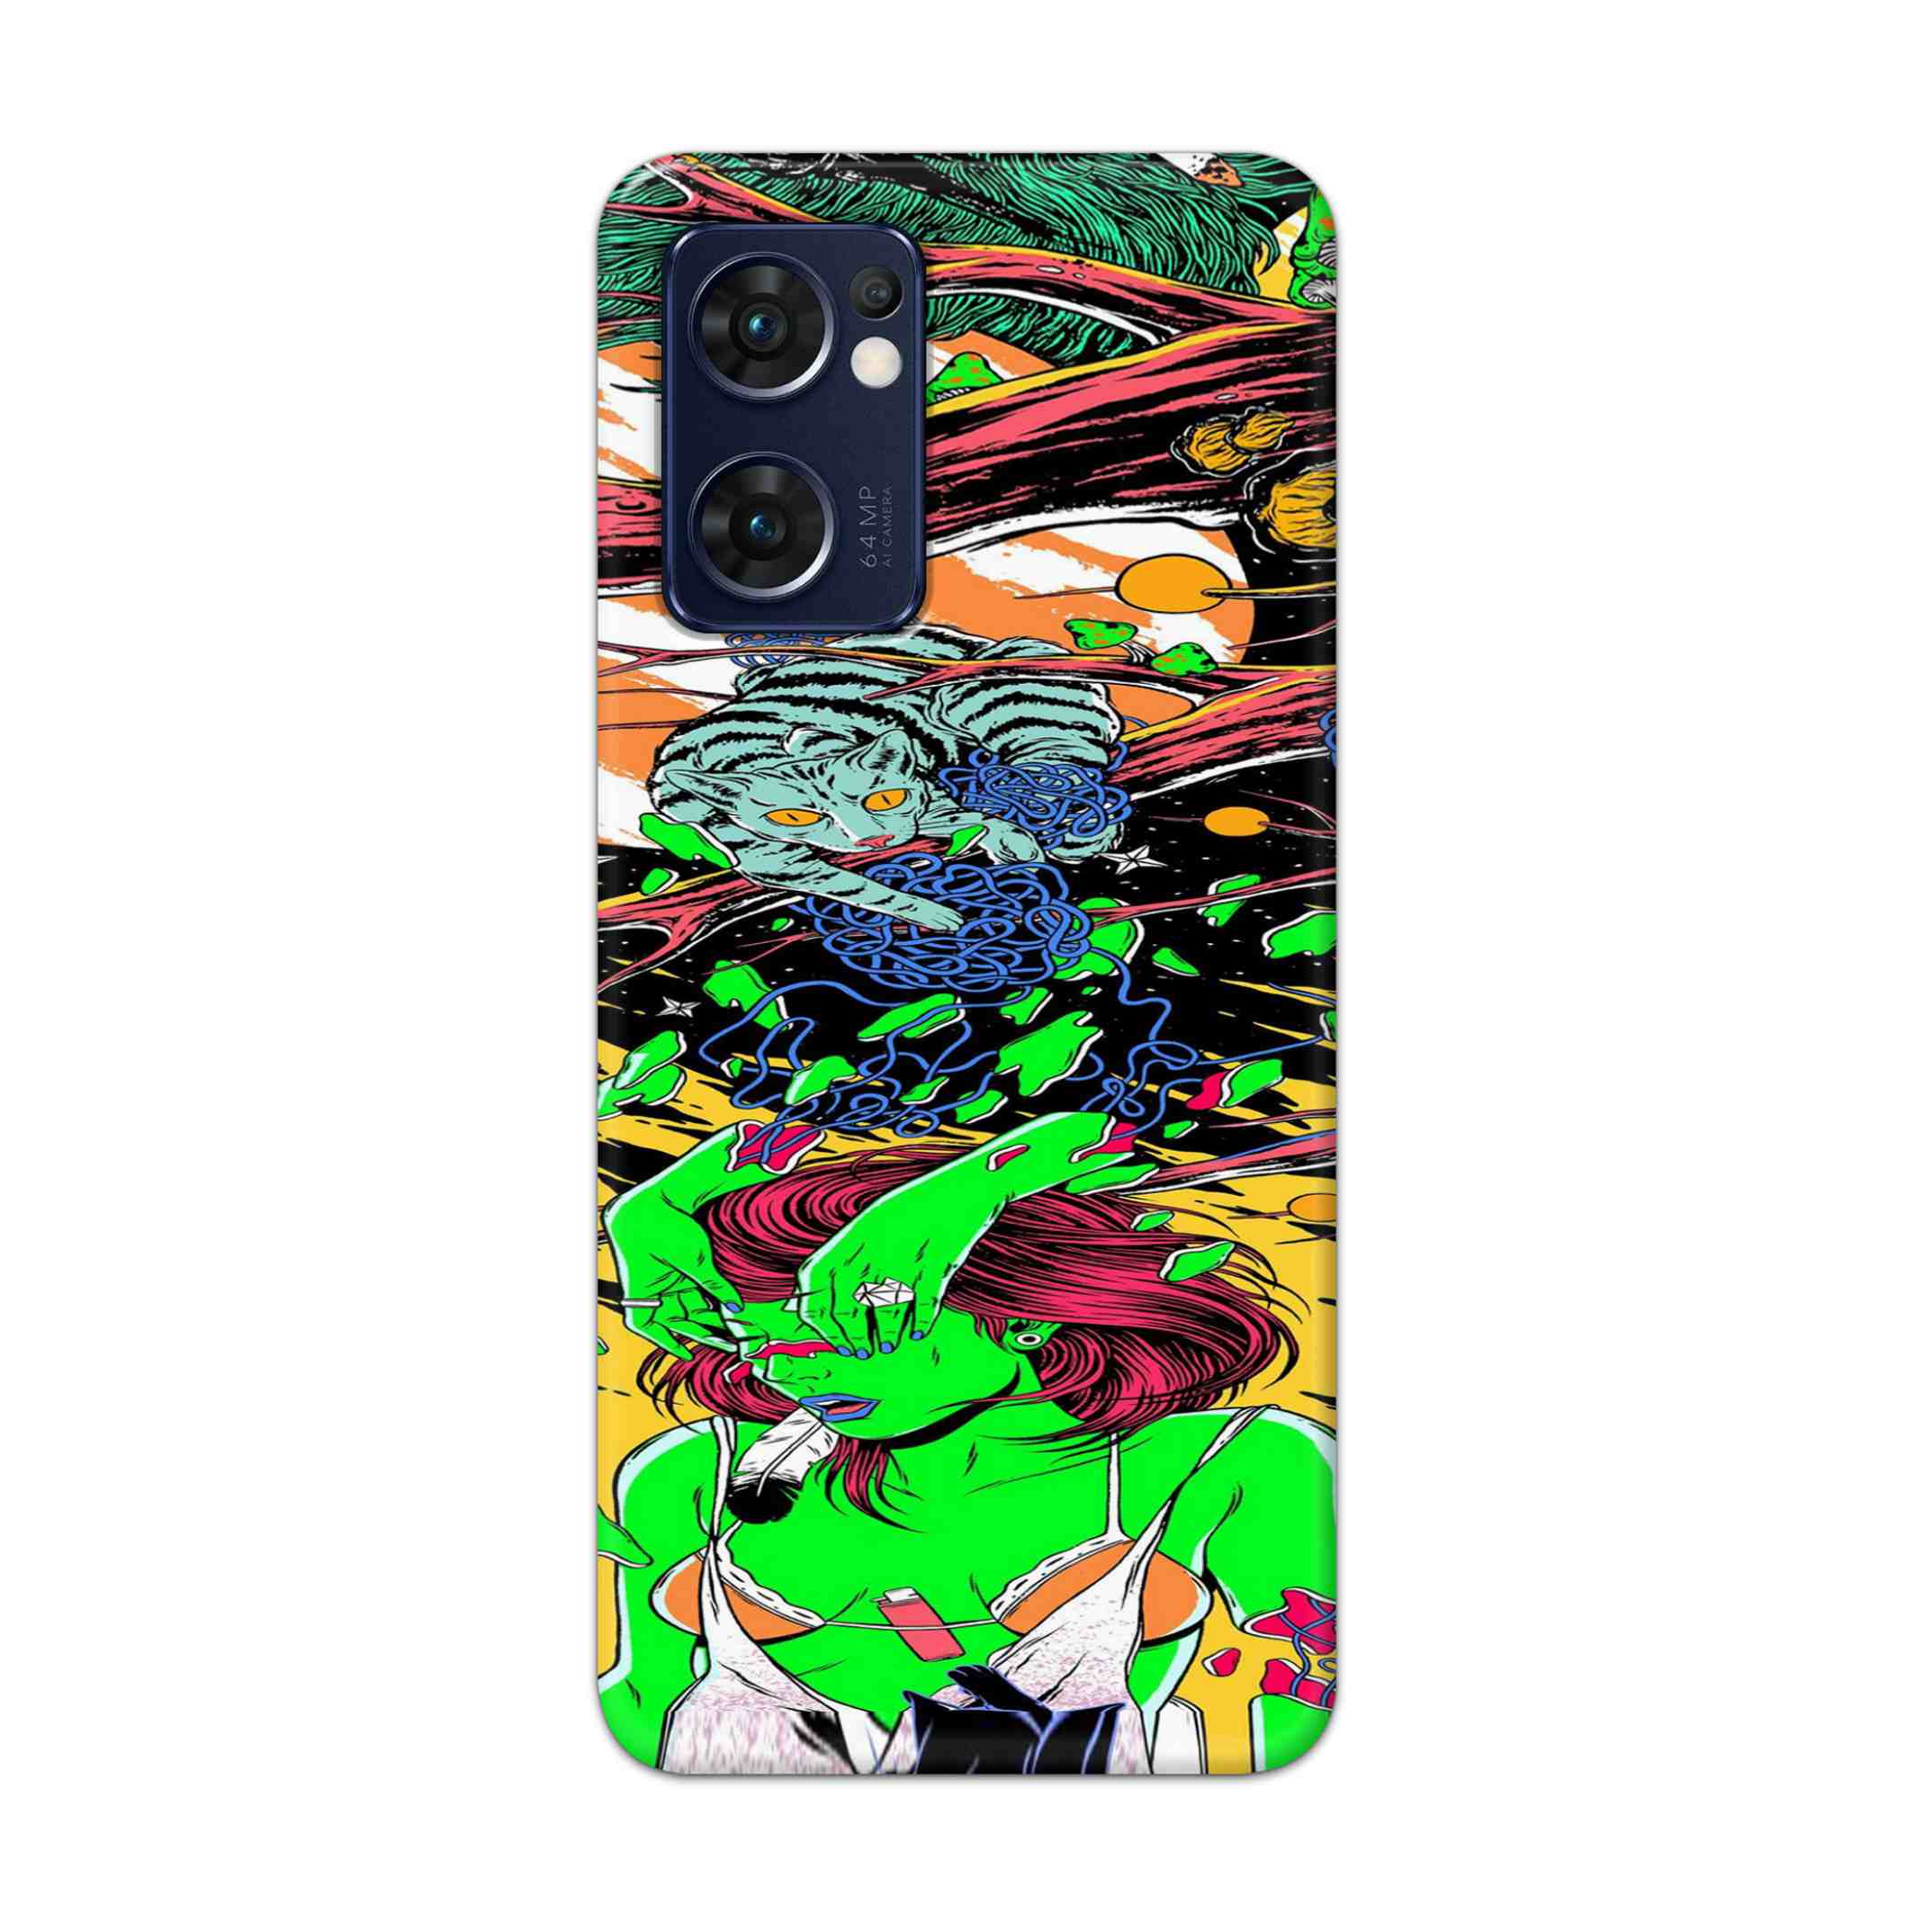 Buy Green Girl Art Hard Back Mobile Phone Case Cover For Reno 7 5G Online